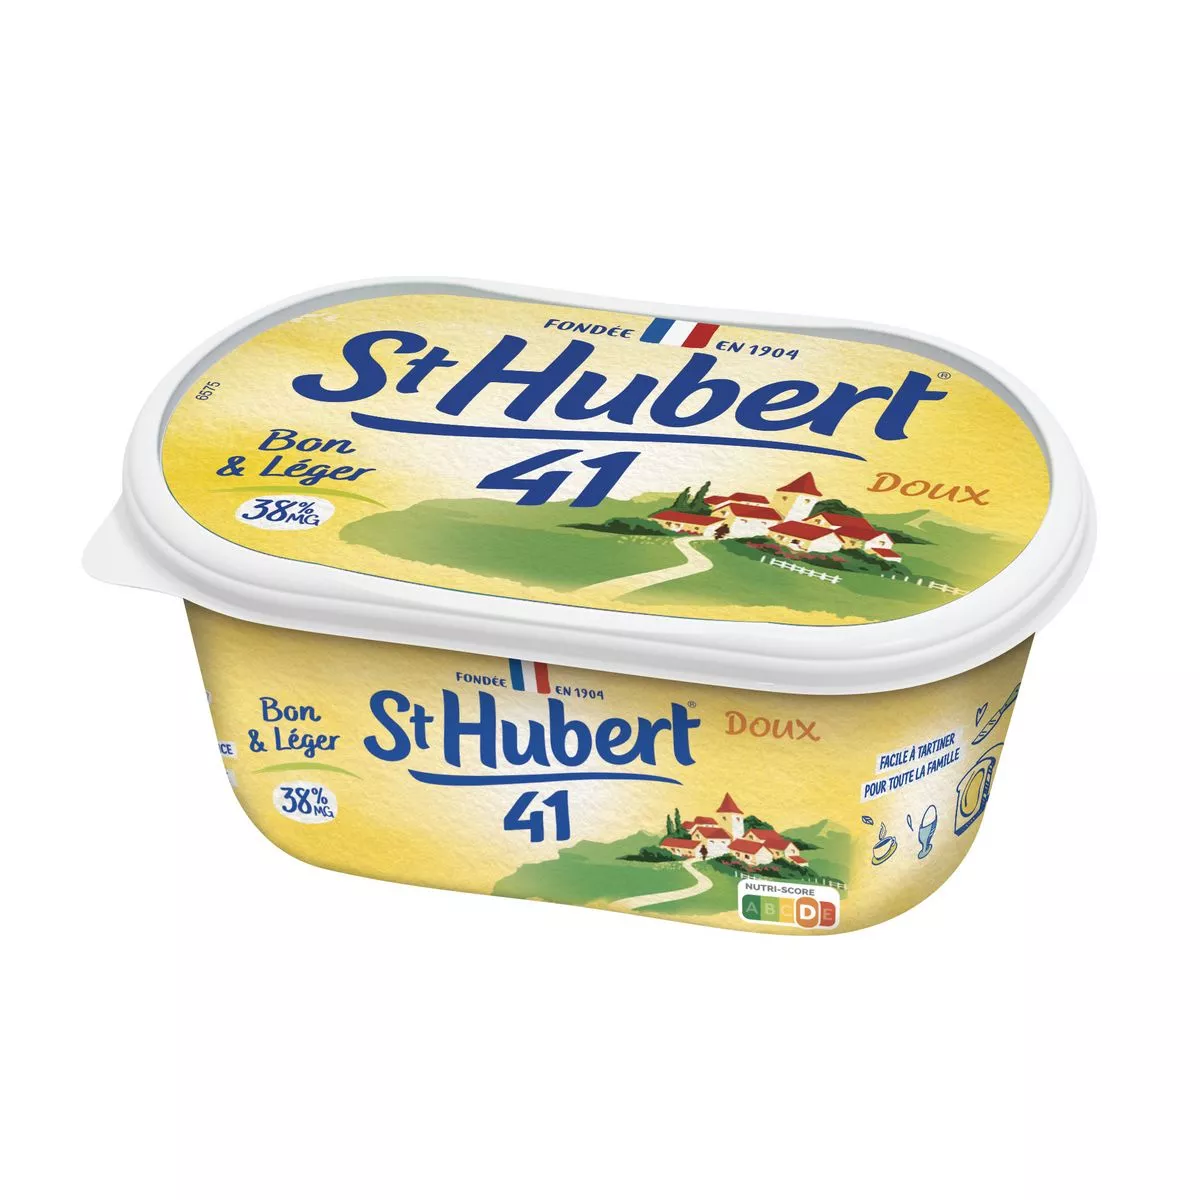 St Hubert 41 Margarine 250g